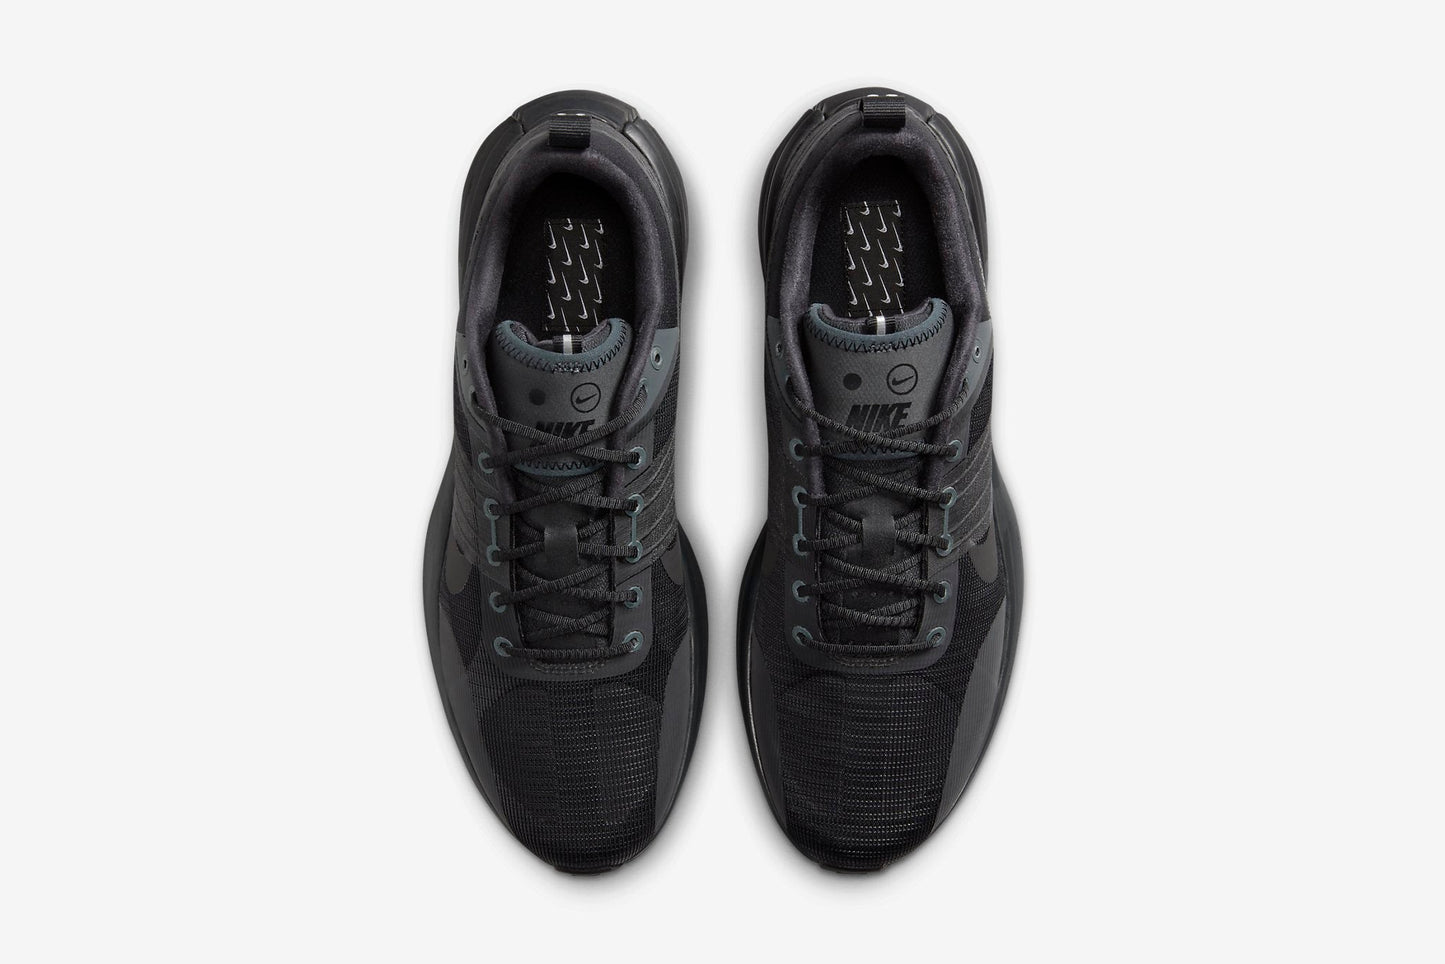 Nike "Lunar Roam" M - Dark Smoke Grey / Black